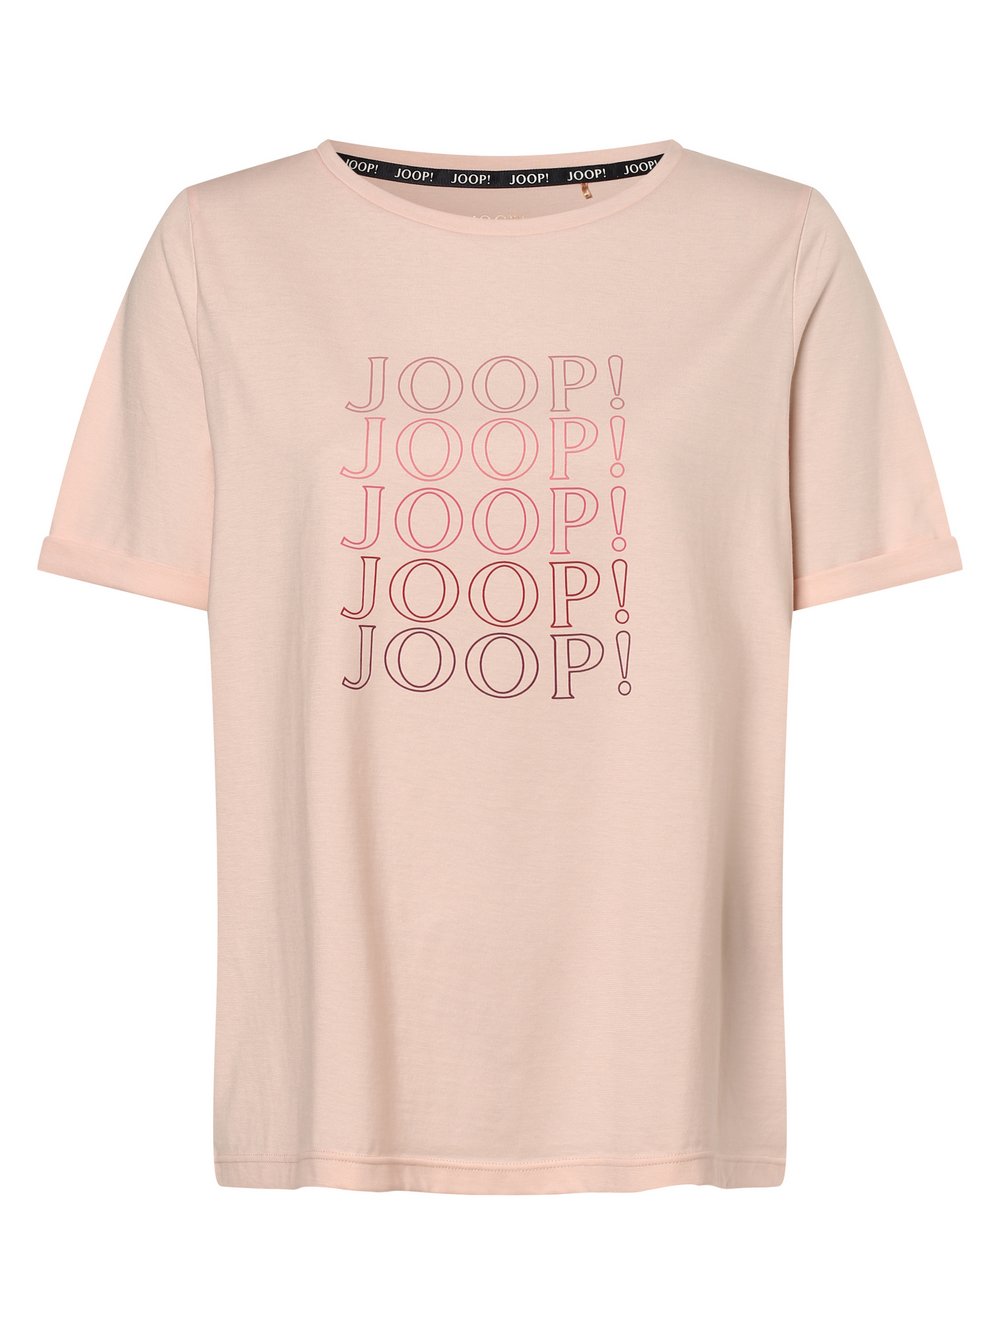 Joop - Damska koszulka od piżamy, różowy